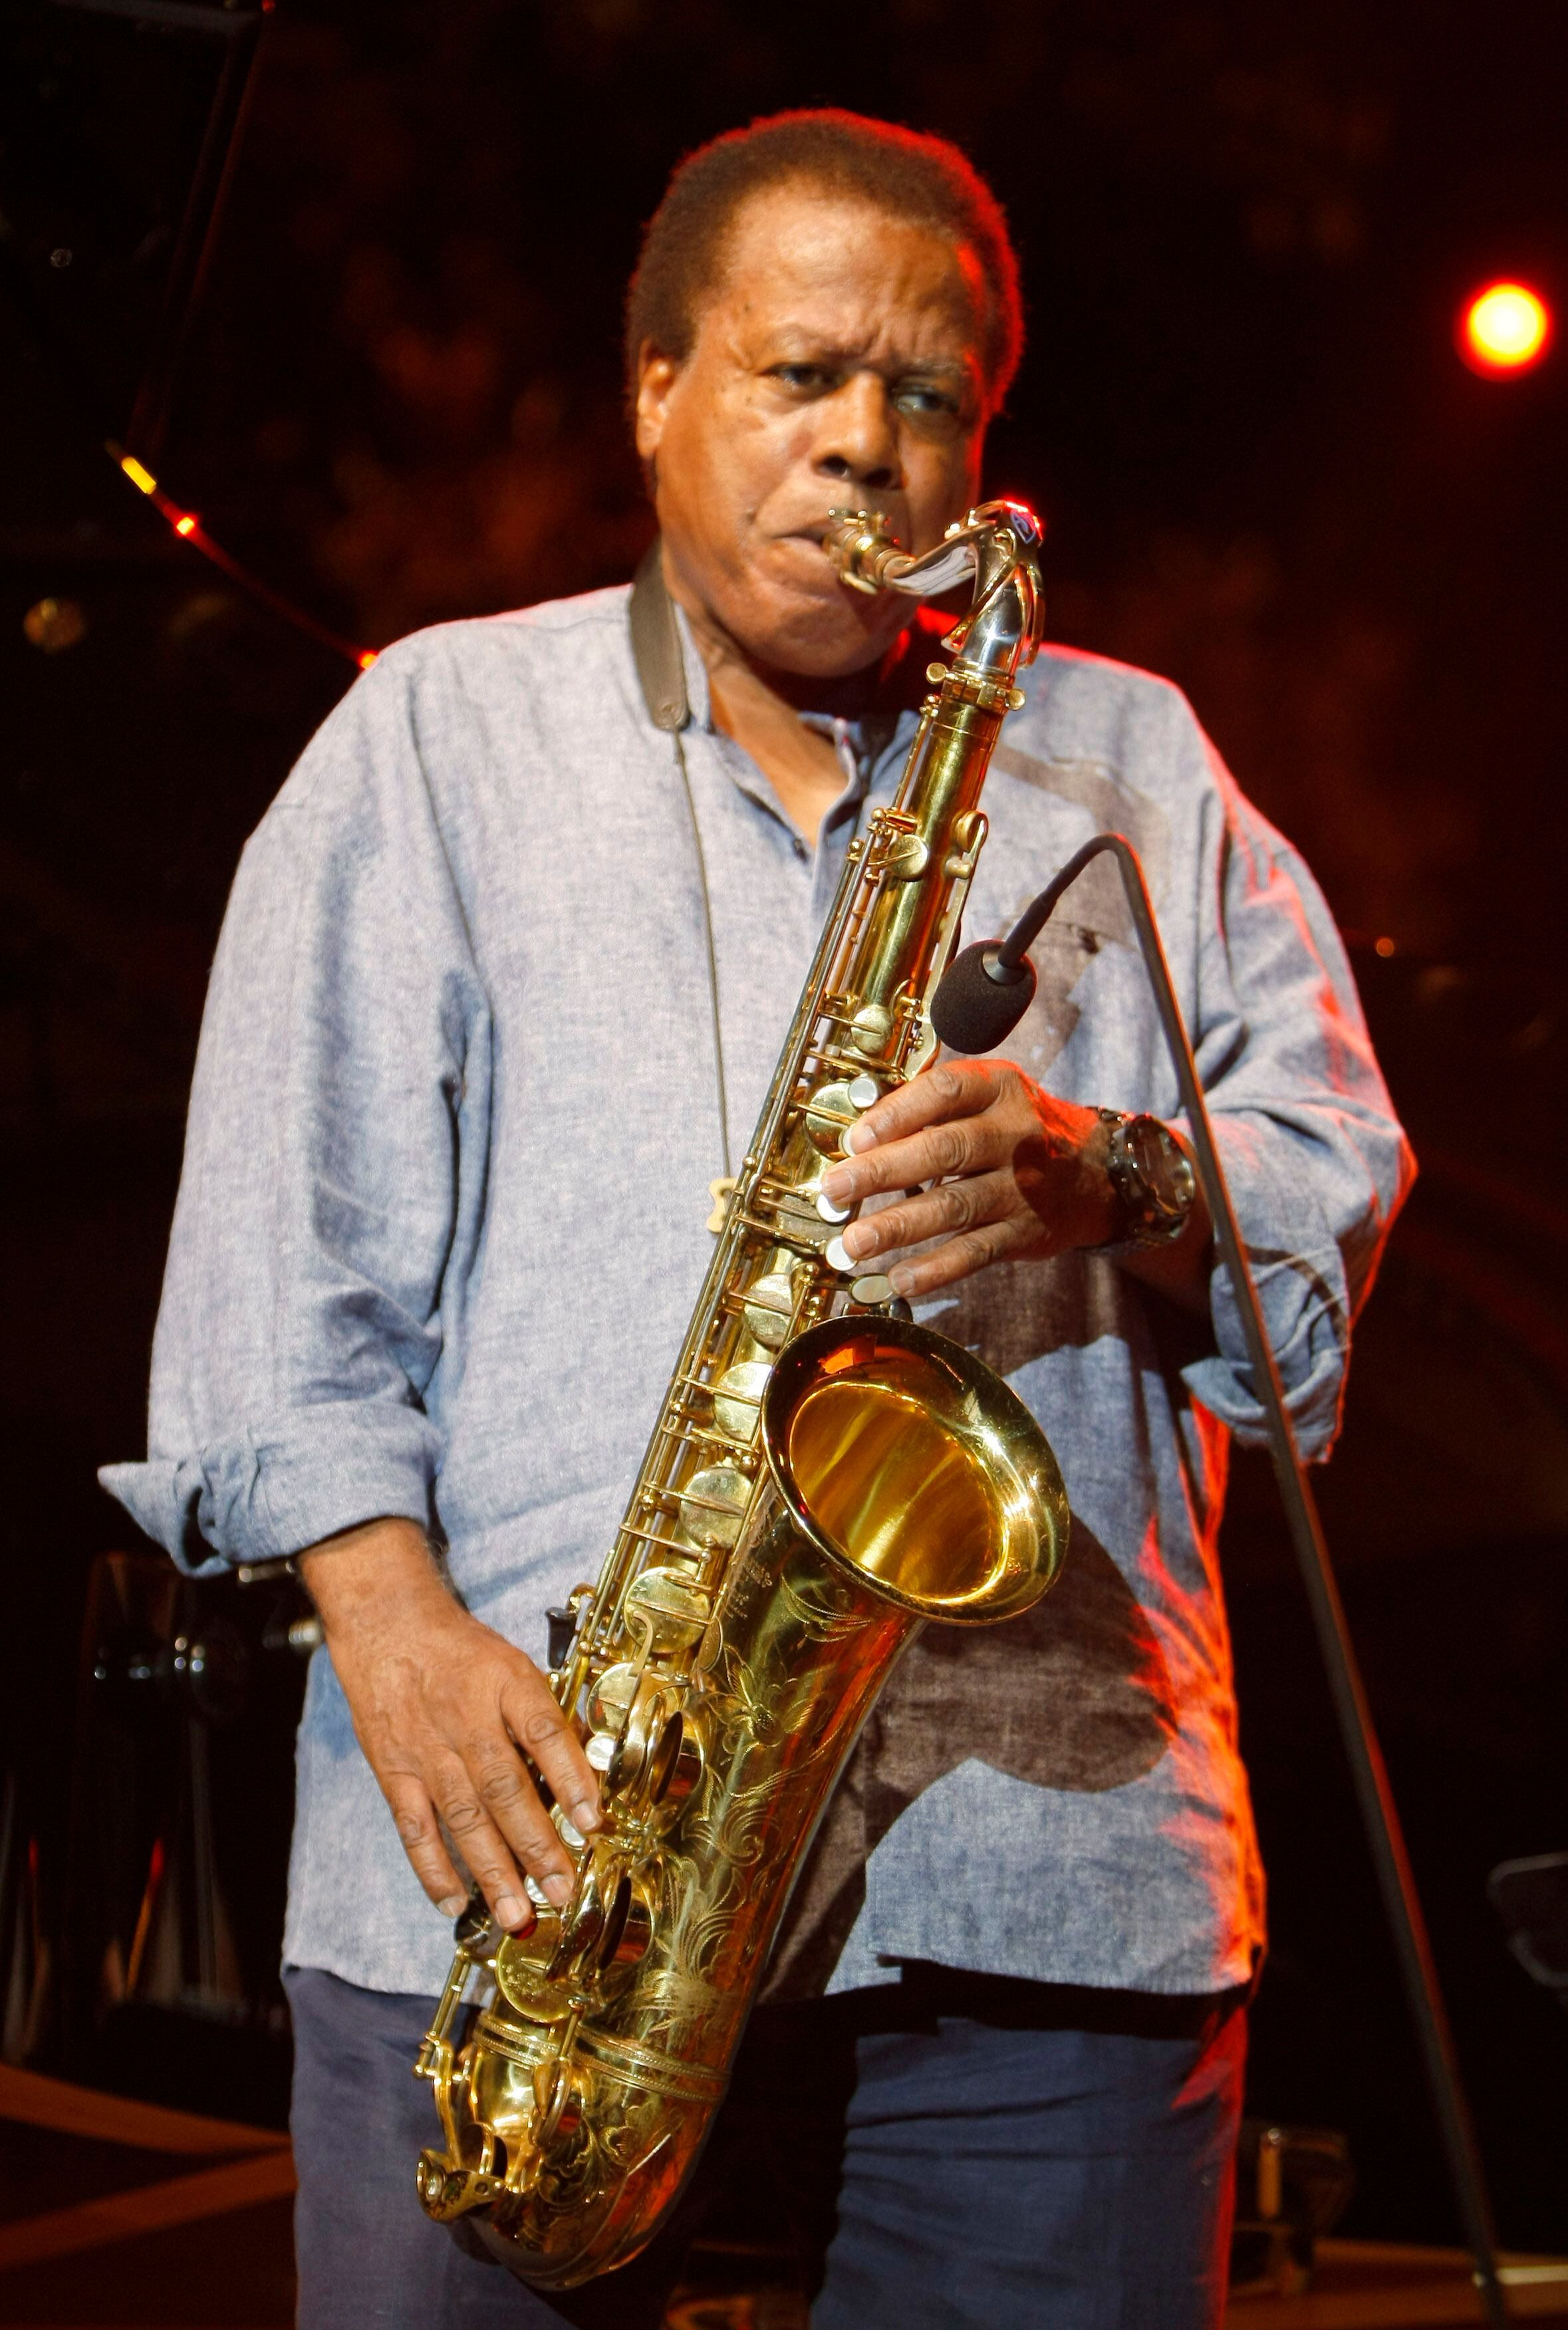 Wayne Shorter, jazz saxophone pioneer, dies at 89